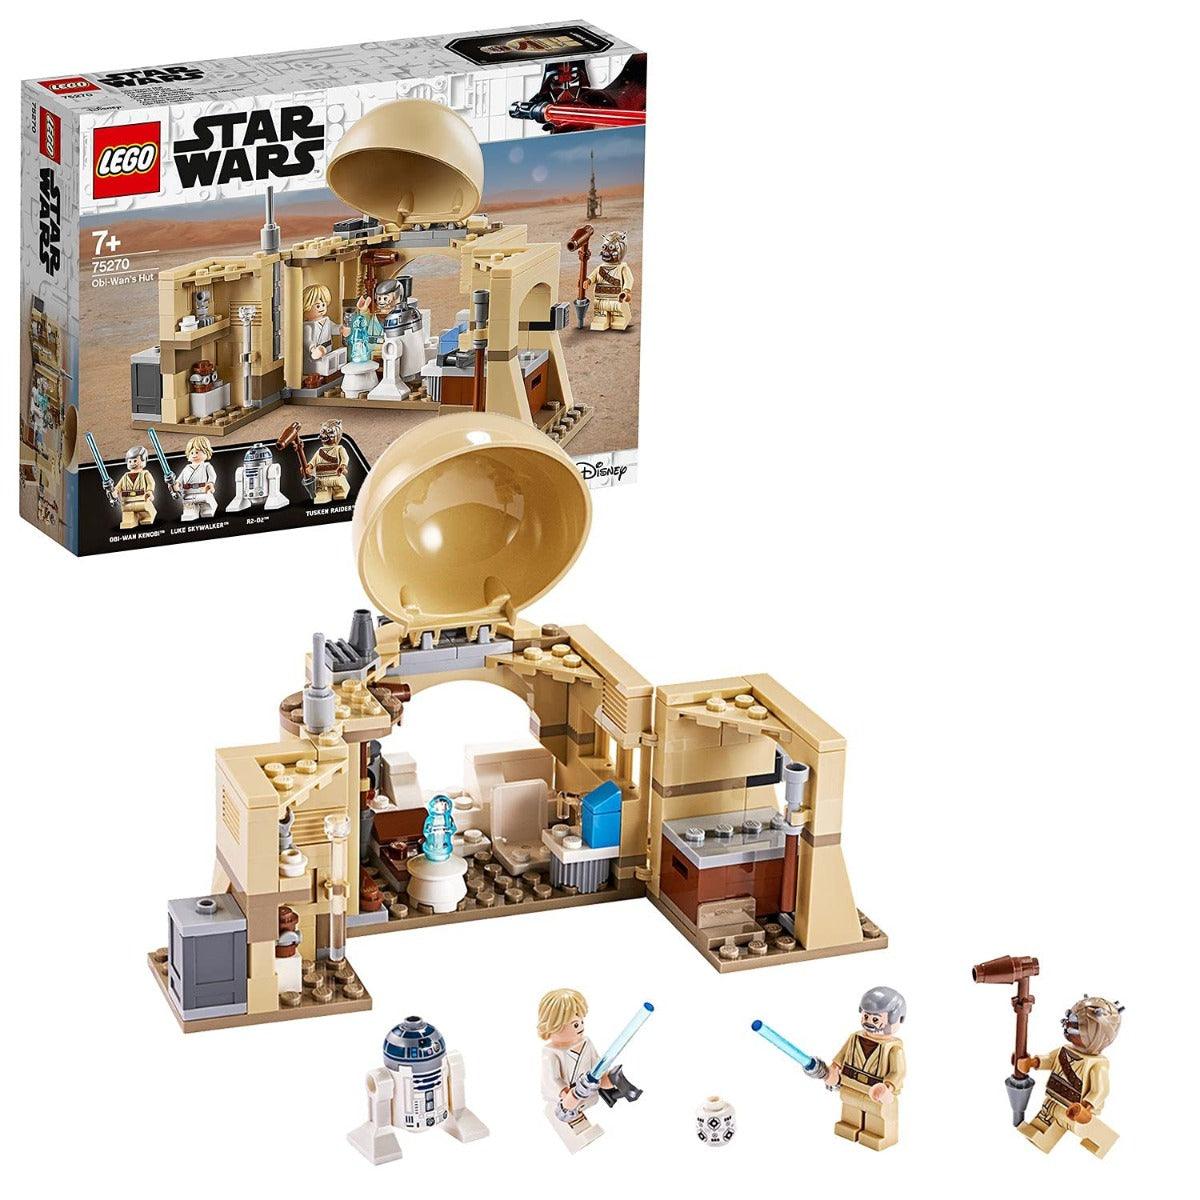 LEGO Star Wars - A New Hope Obi-Wan's Hut